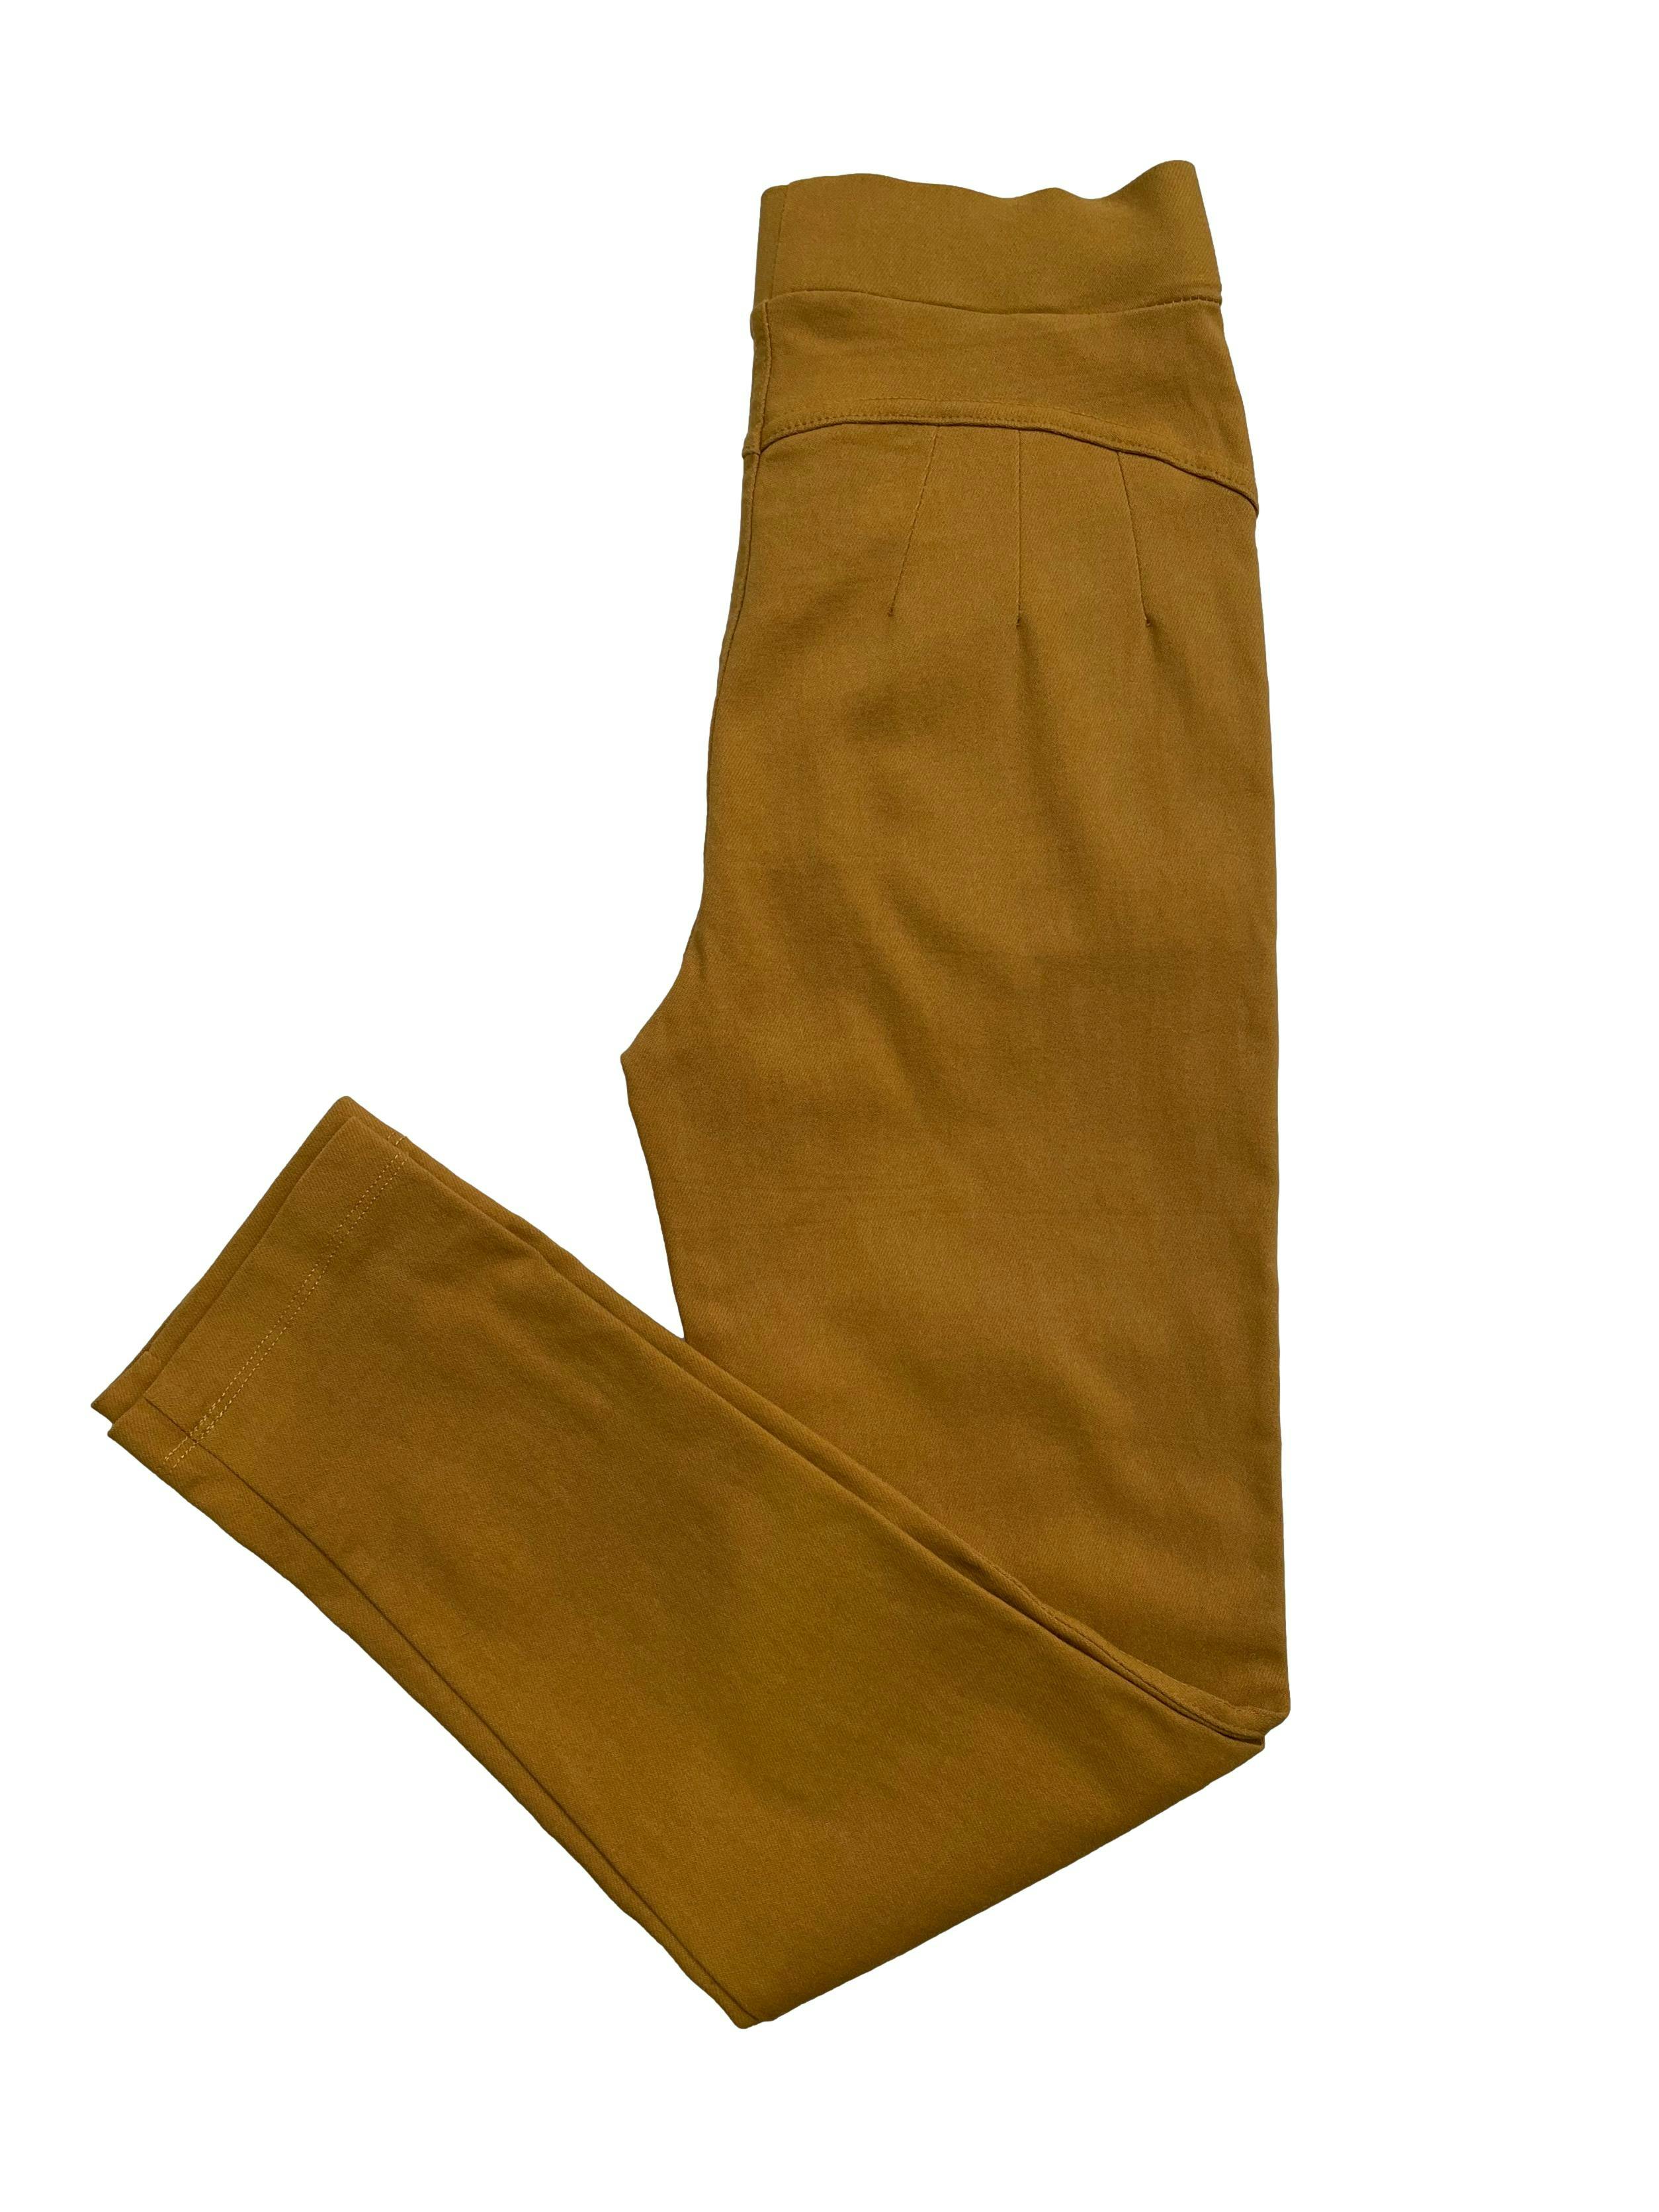 Pantalón skinny stretch color mostaza con bolsillos y pinzas posteriores. Cintura 64cm sin estirar, Largo 85cm.